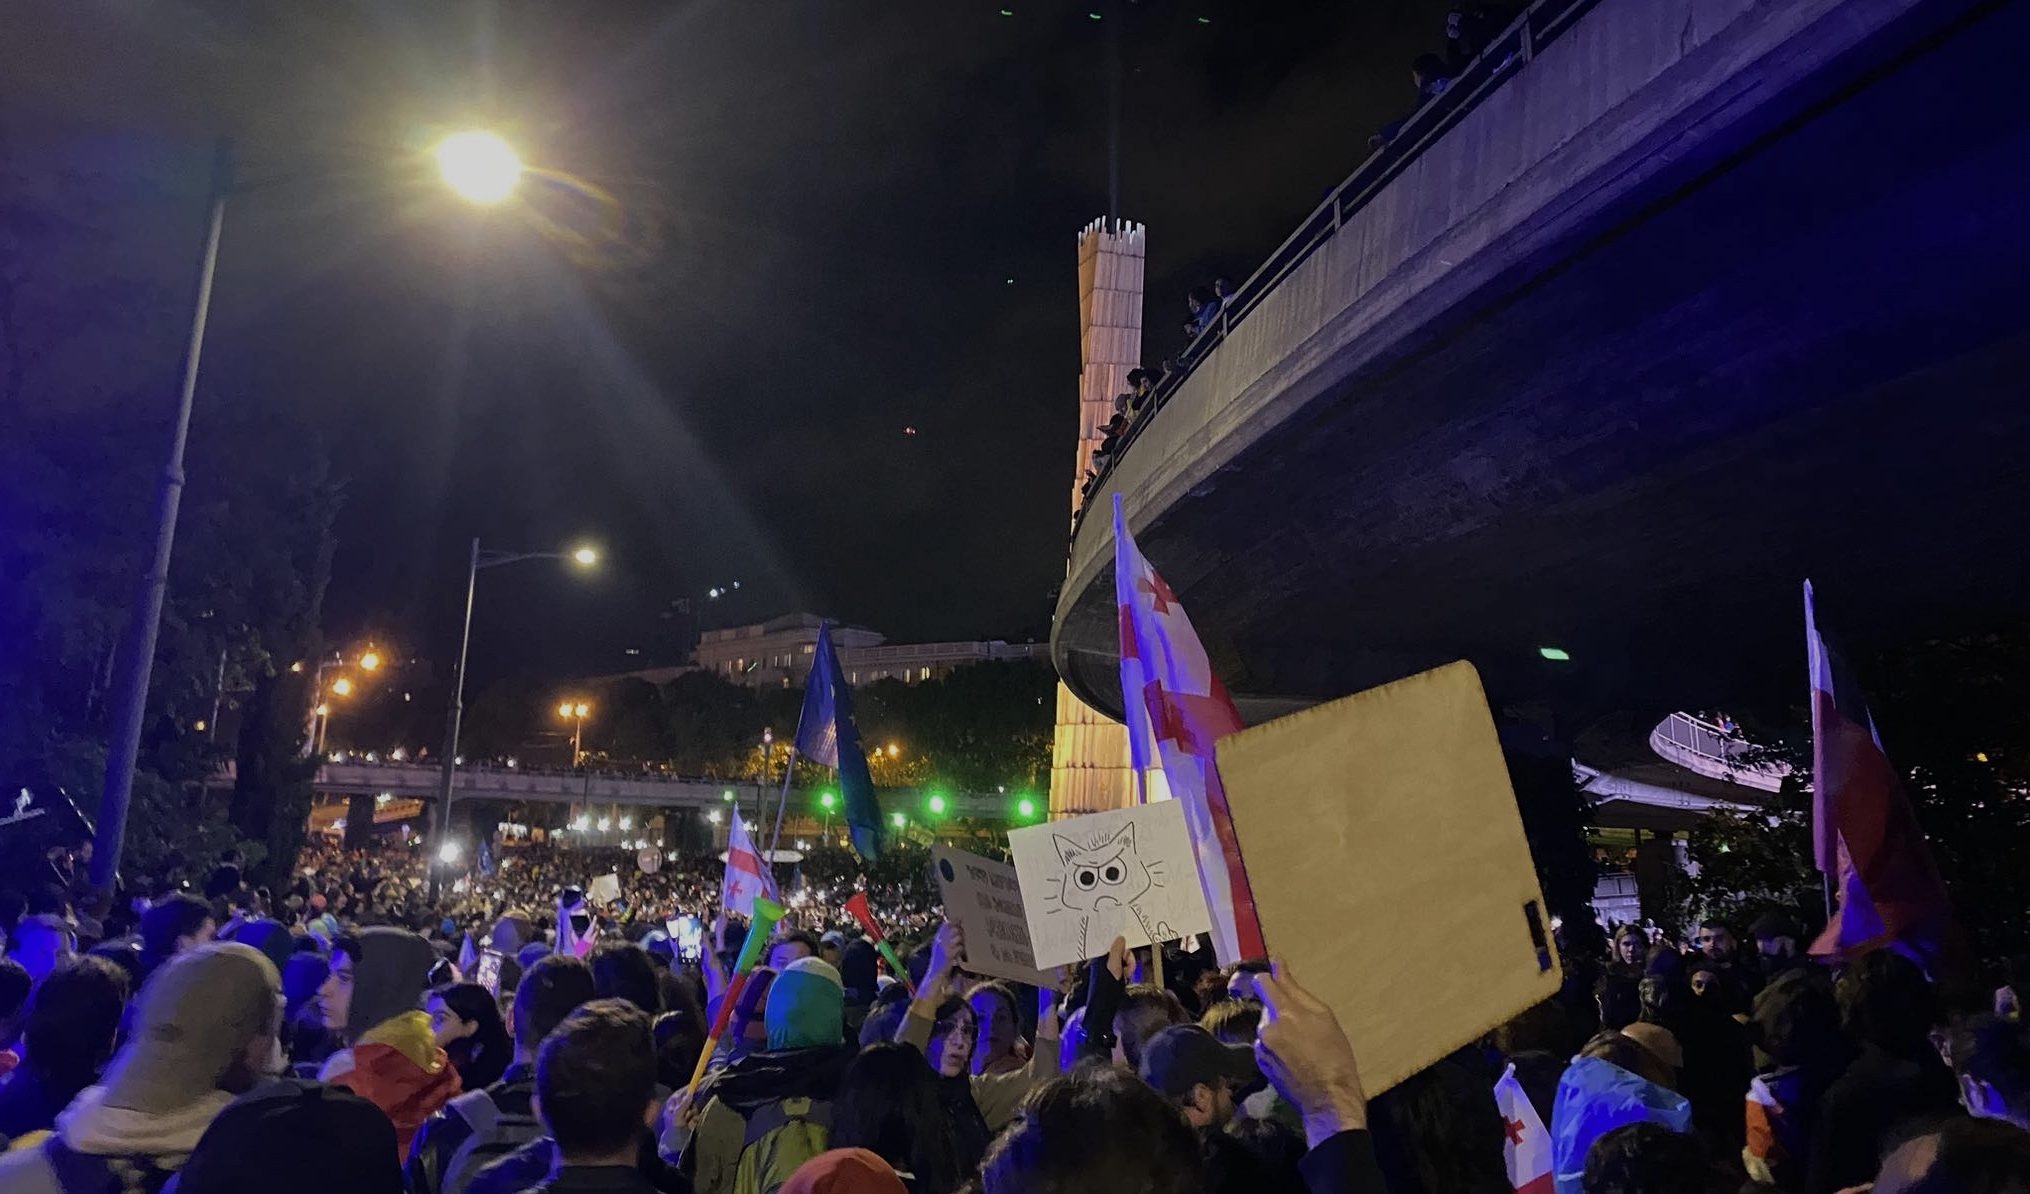 Menschen auf Demonstrationen abends in Tiflis,Georgien protestieren und halten Schilder und georgische und EU-Flaggen hoch